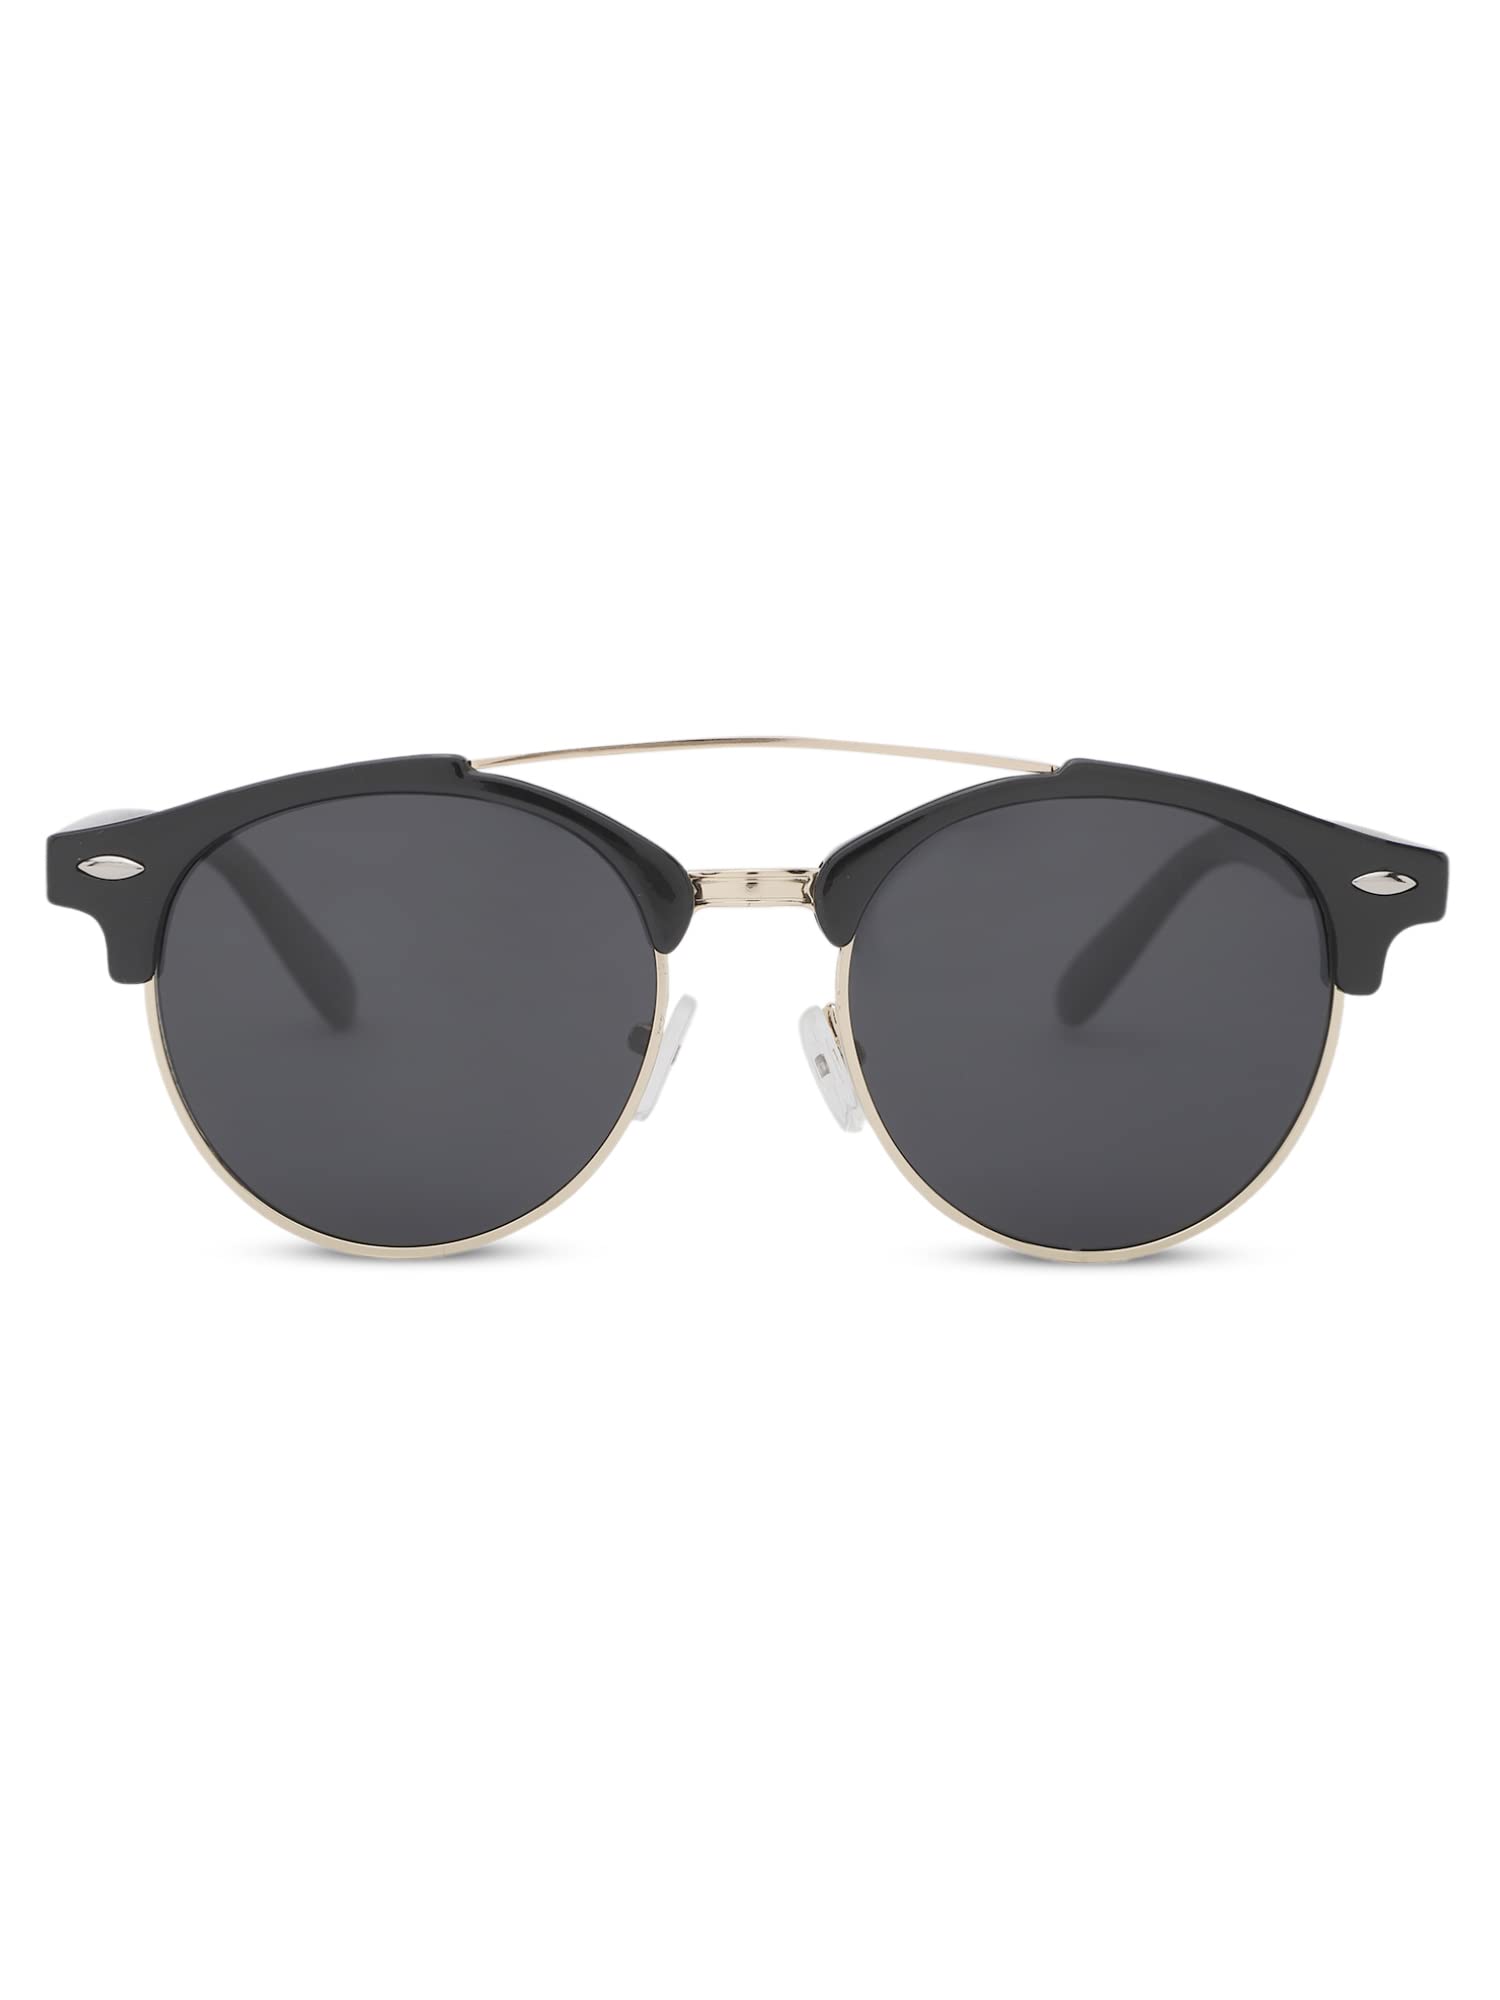 Intellilens Round Sunglasses For Men & Women|Polarized & UV Protected Goggles for Men & Women (Black & Grey) (52-17-138)